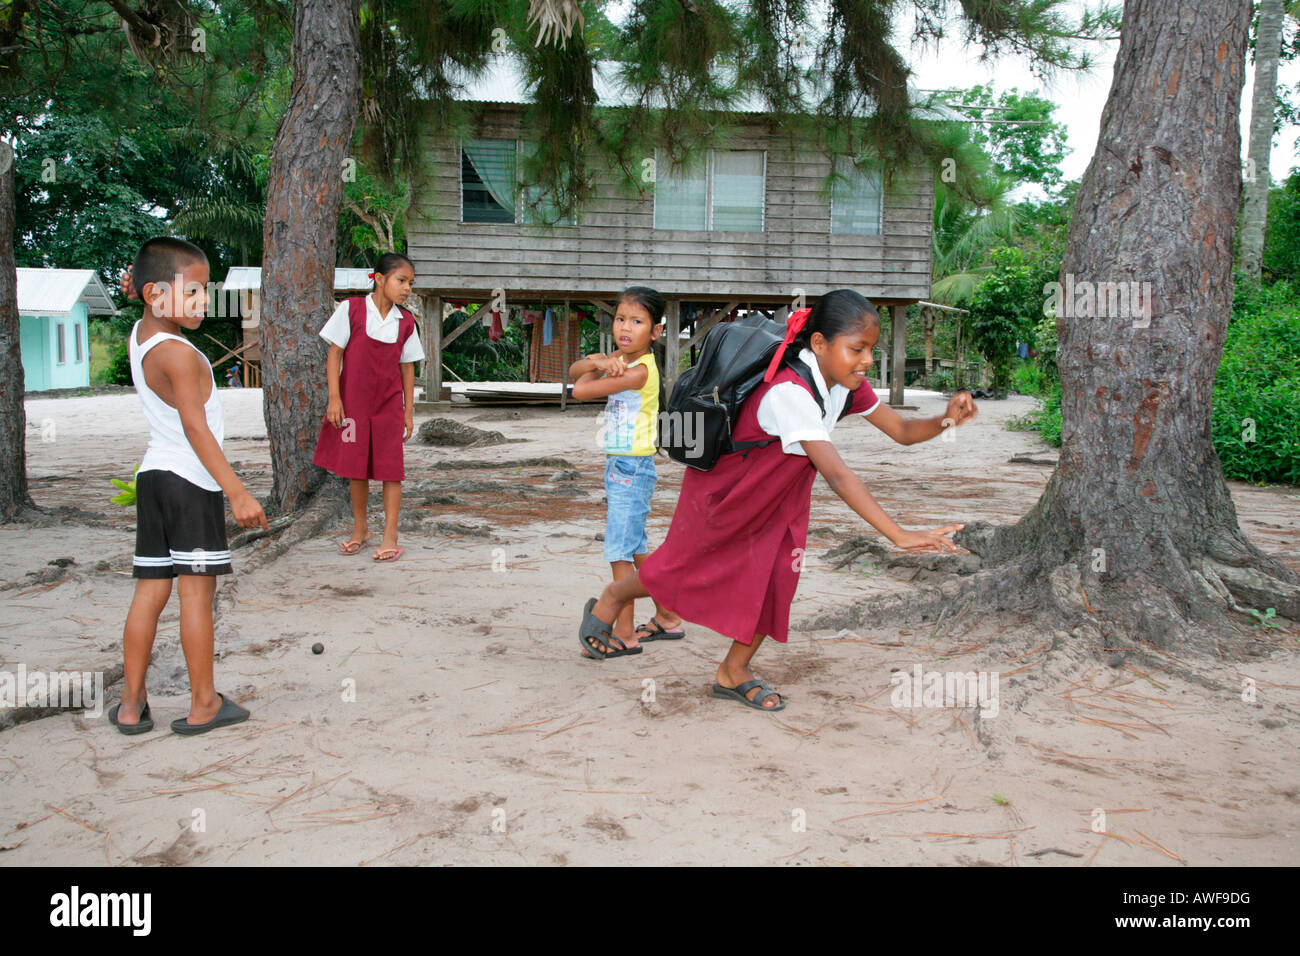 Schülerinnen und Schüler in Uniform während der Pause, Indianer, Stamm der Arawak, Santa Mission, Guyana, Südamerika Stockfoto